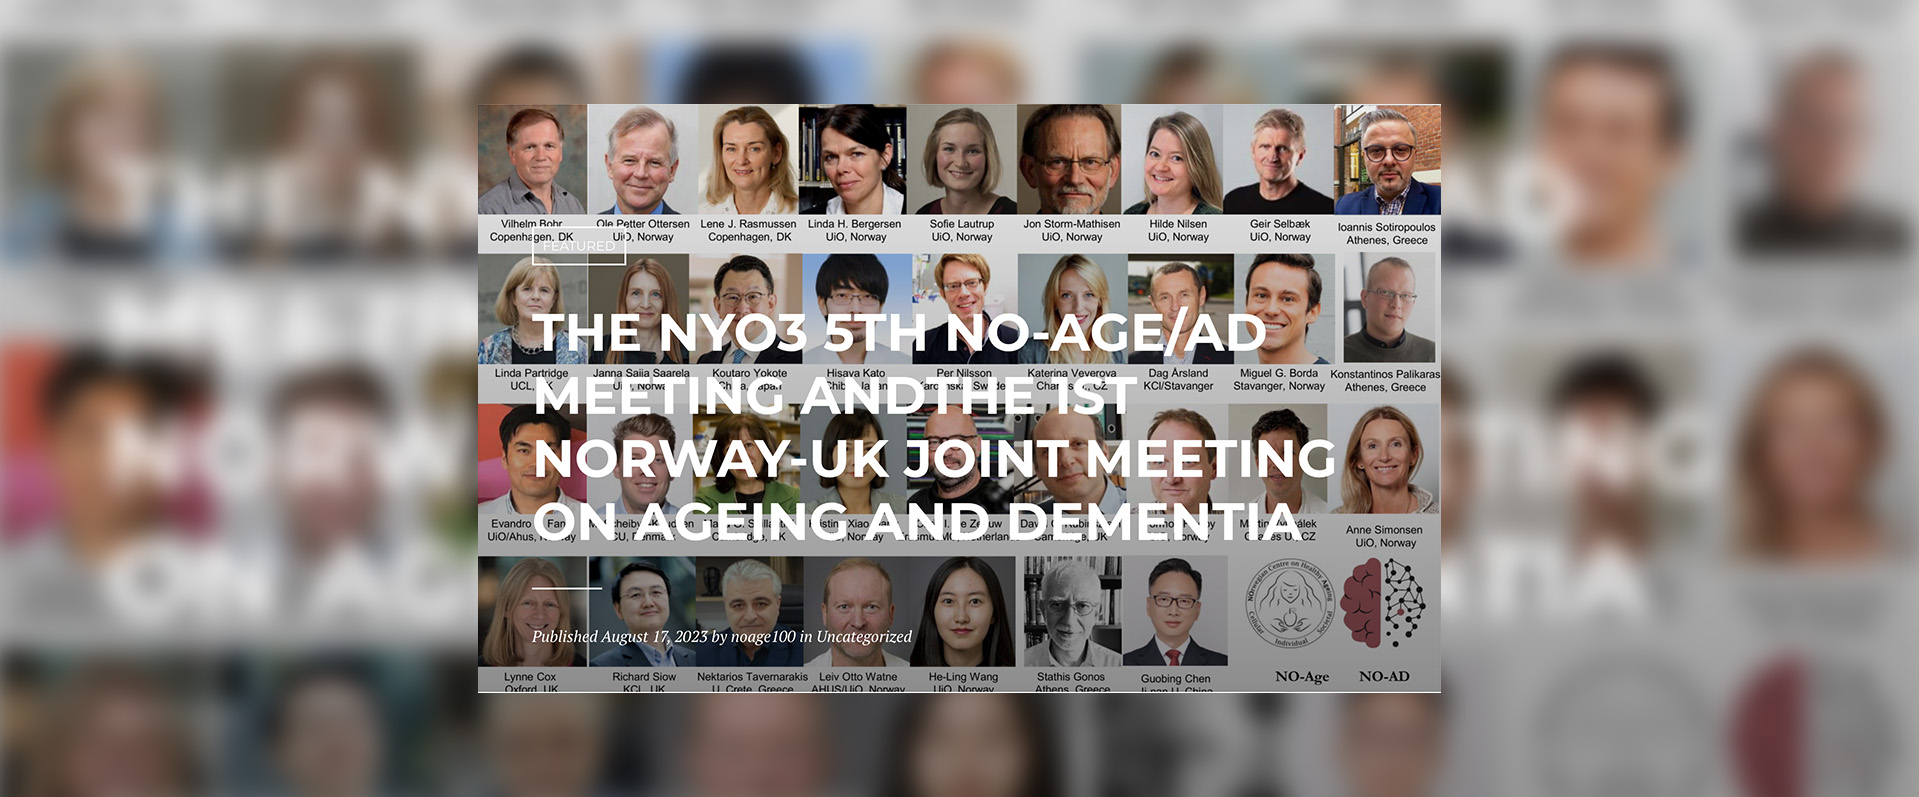 第五届NYO3无老龄化/老年痴呆会议暨第一届挪威-英国老龄化和痴呆症联合会议